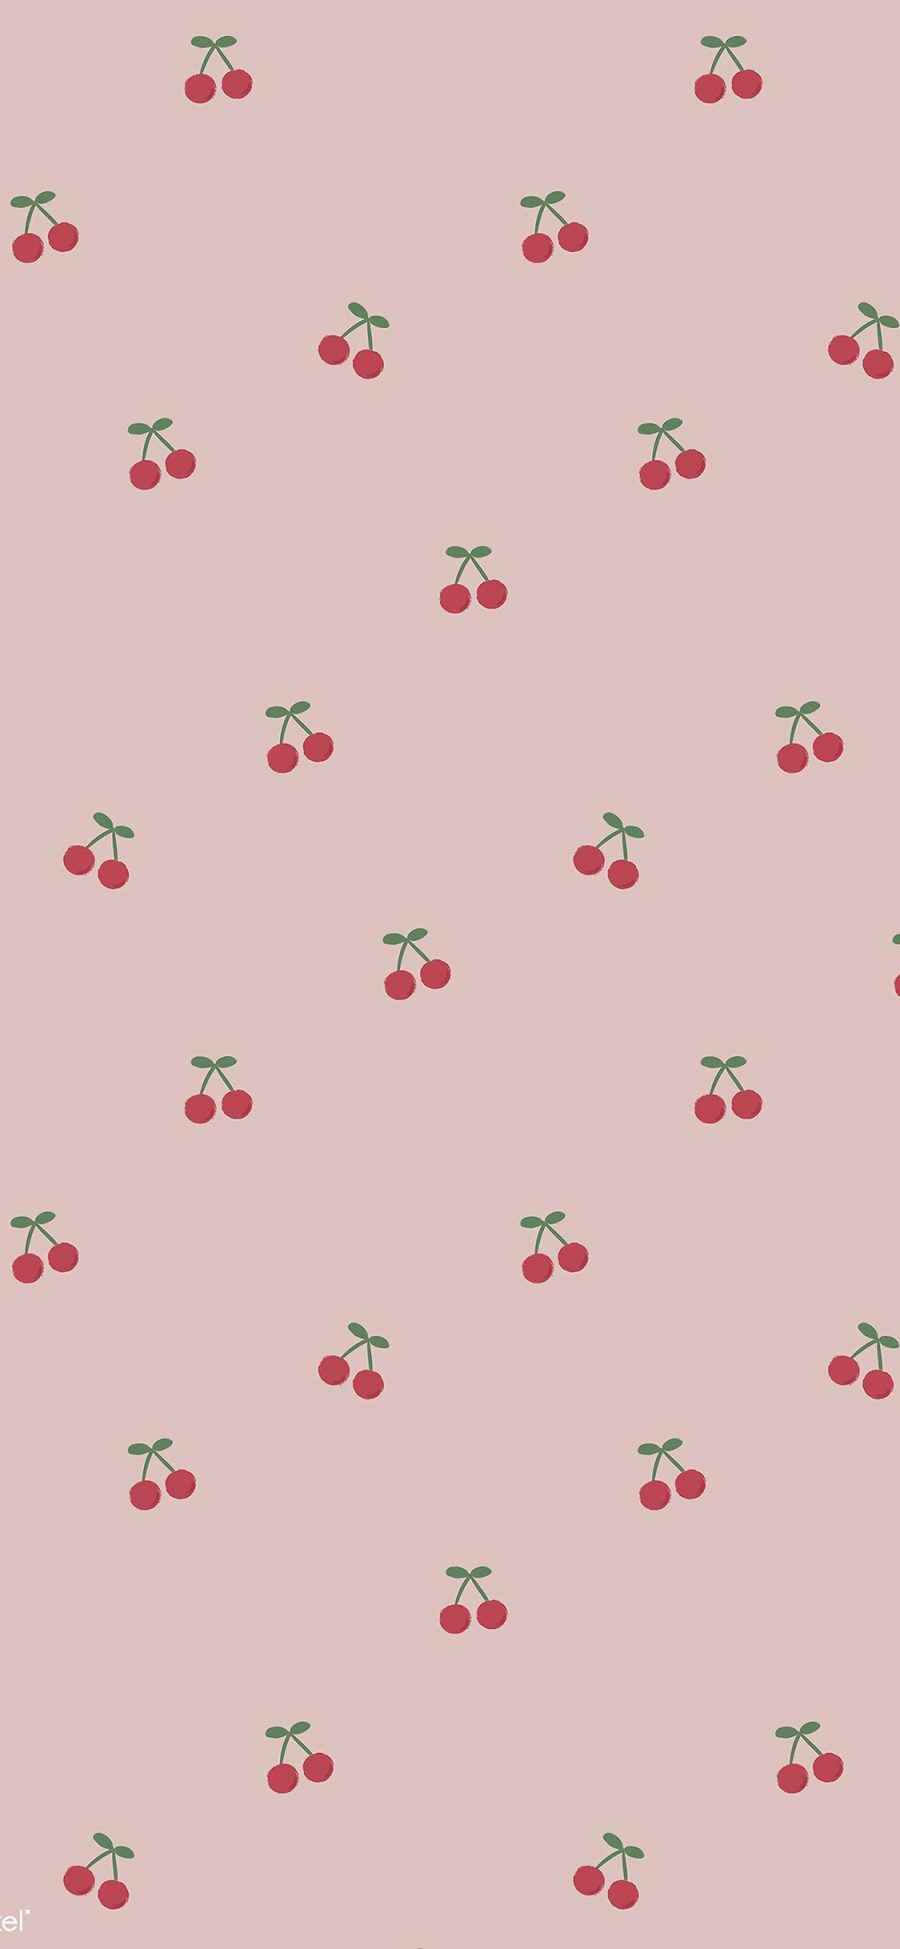 [2436×1125]樱桃 平铺 水果 粉色 少女 苹果手机动漫壁纸图片